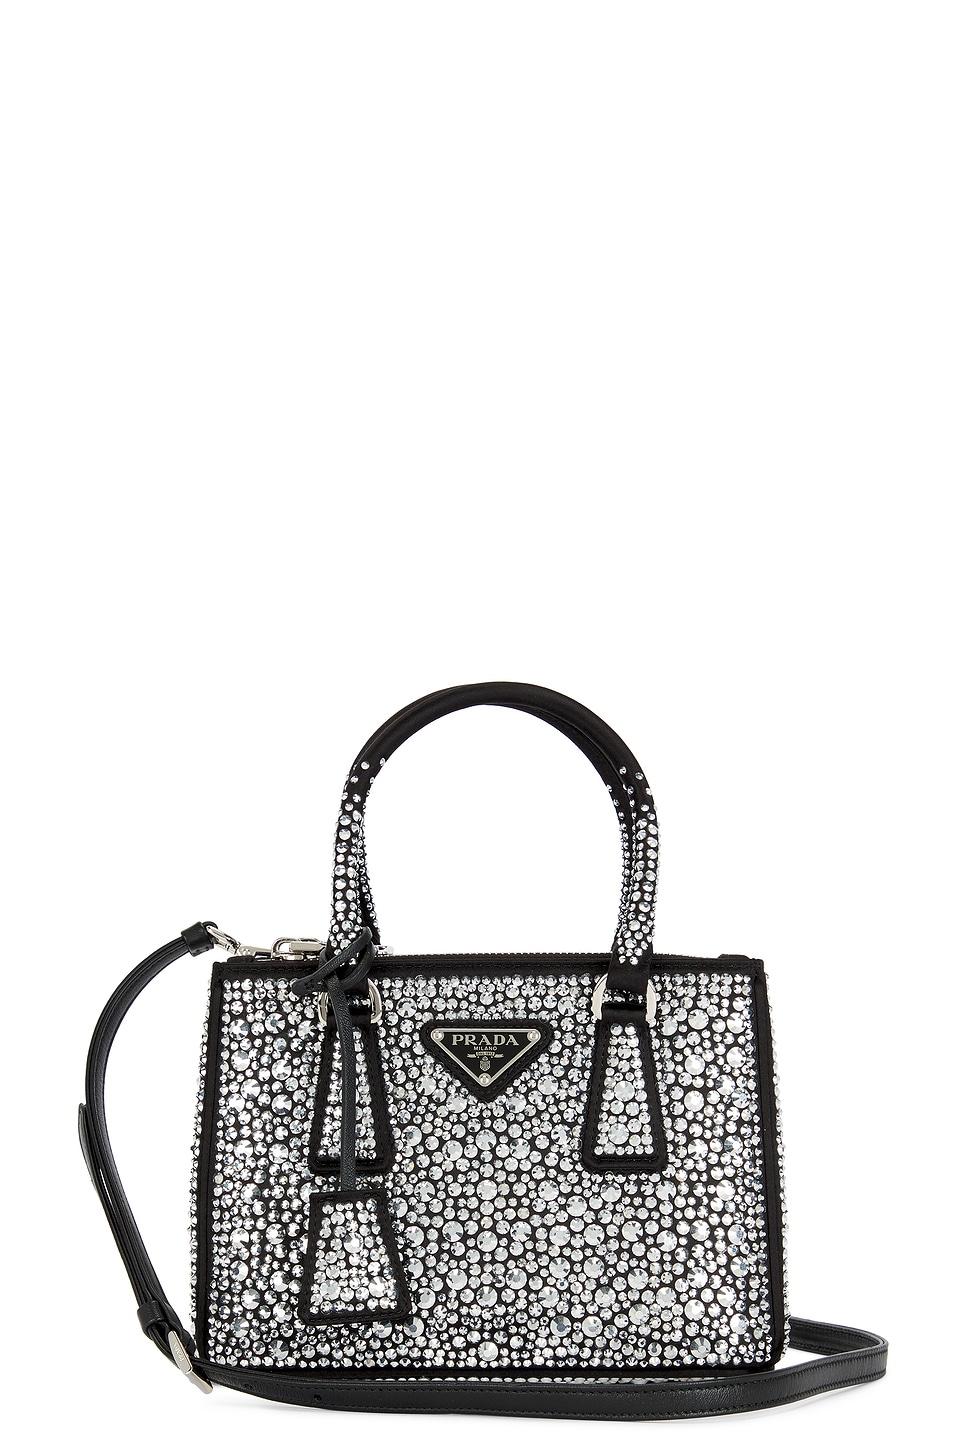 Galleria Crystal Handbag in Black